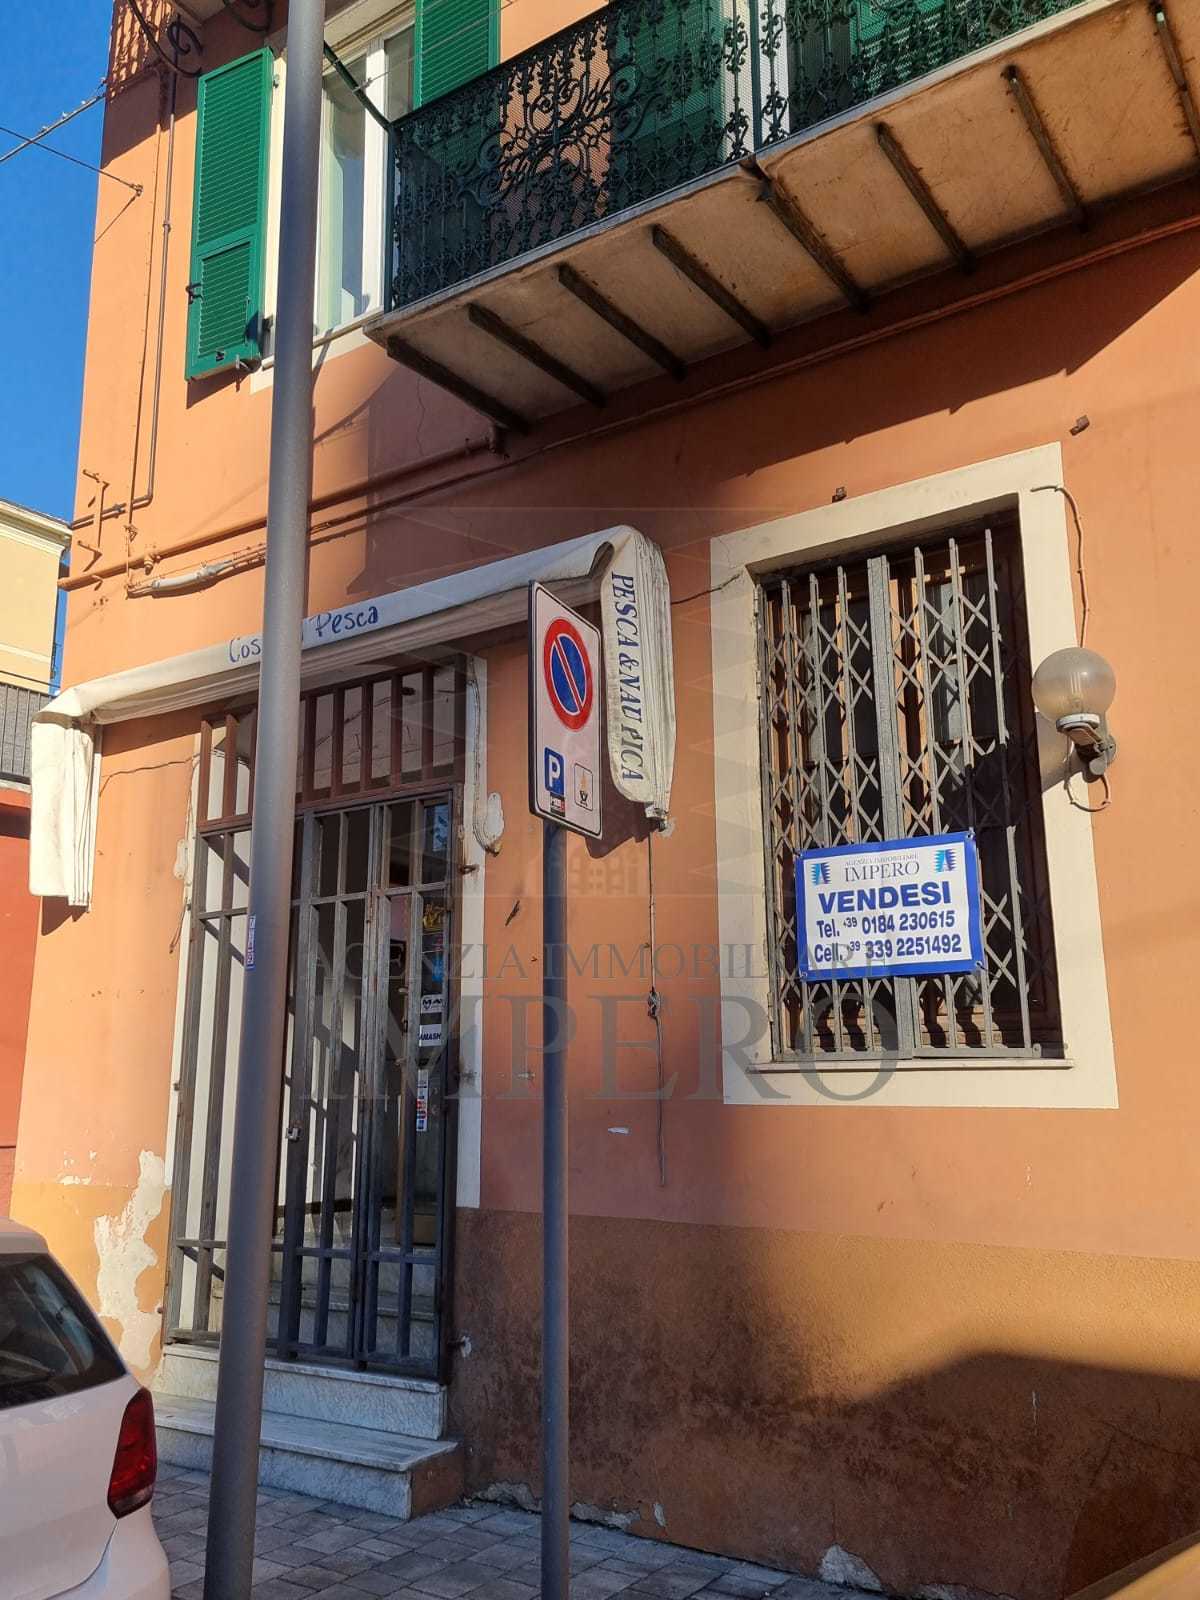 Locale commerciale in vendita in via trossarelli 5, Ventimiglia